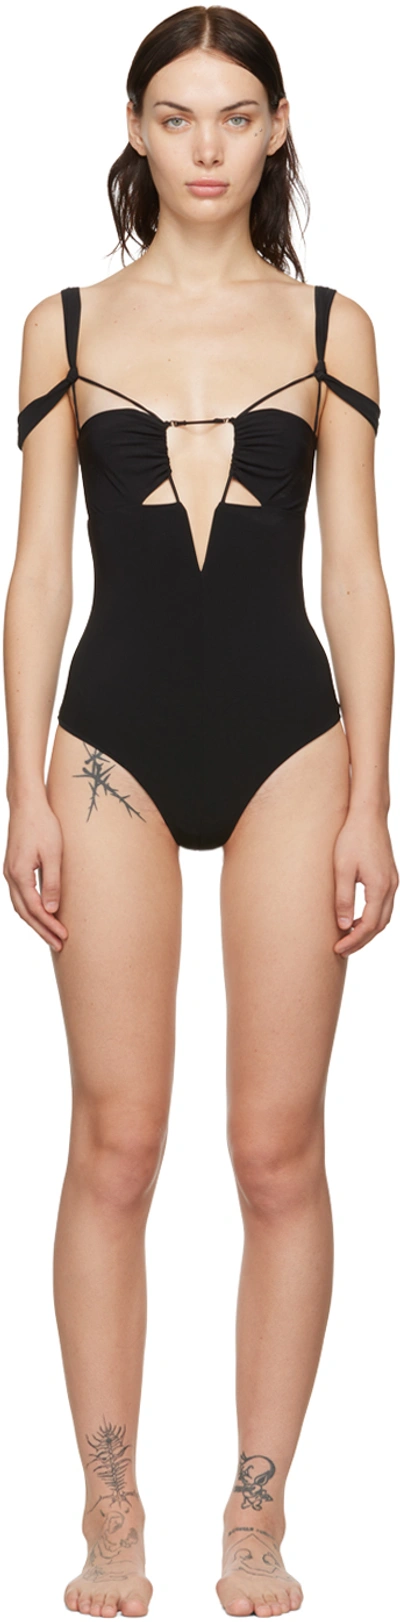 Nensi Dojaka Black Cutout One-piece Swimsuit